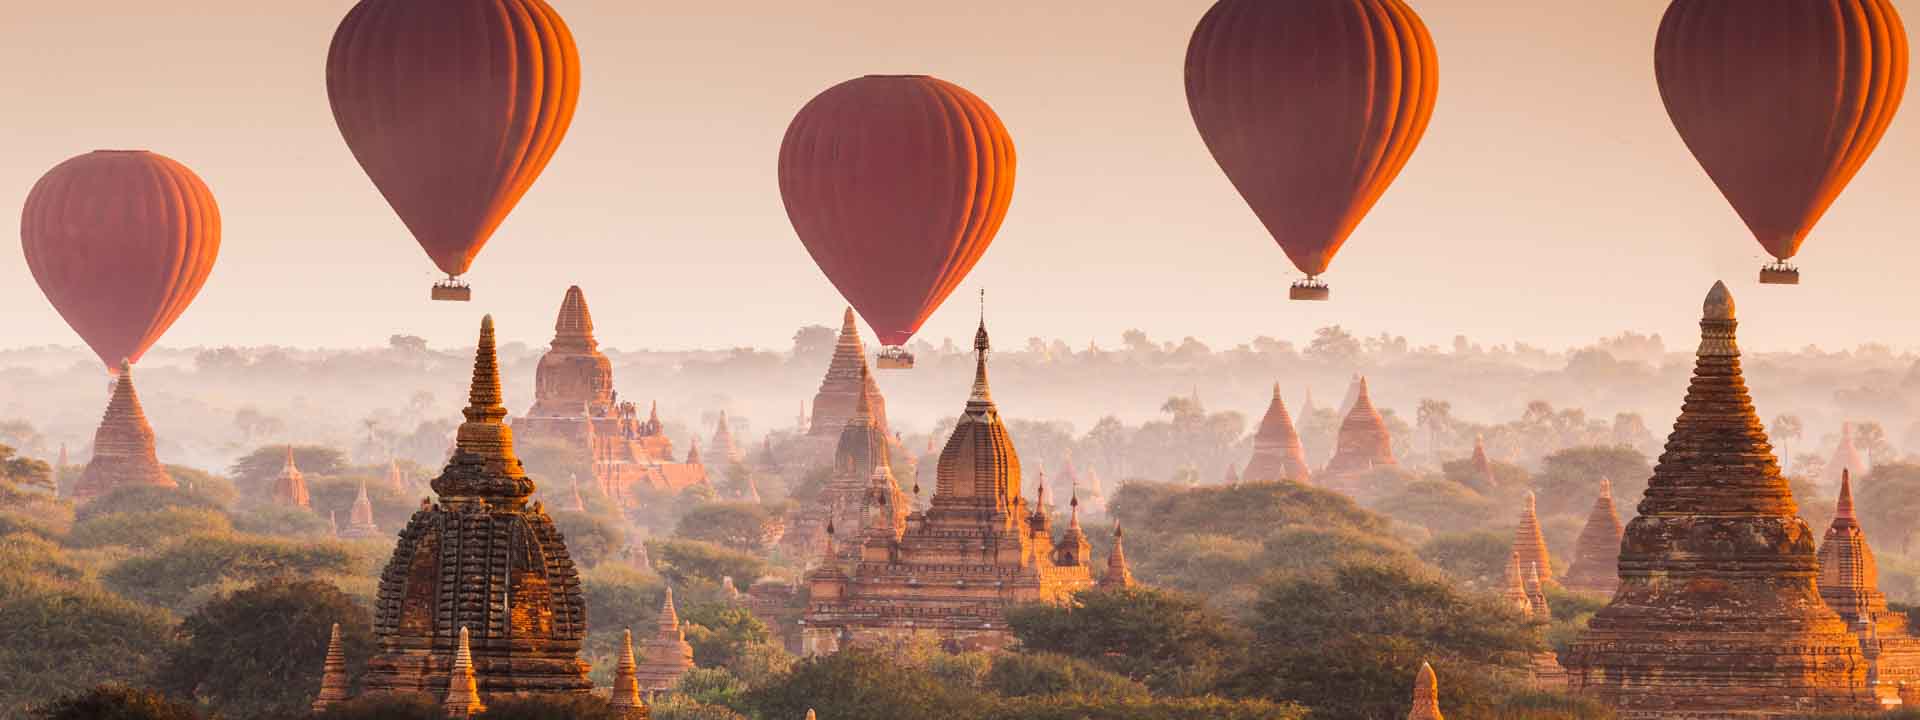 Ruta de los Sentidos por Tailandia Myanmar Vietnam y Camboya 20 días